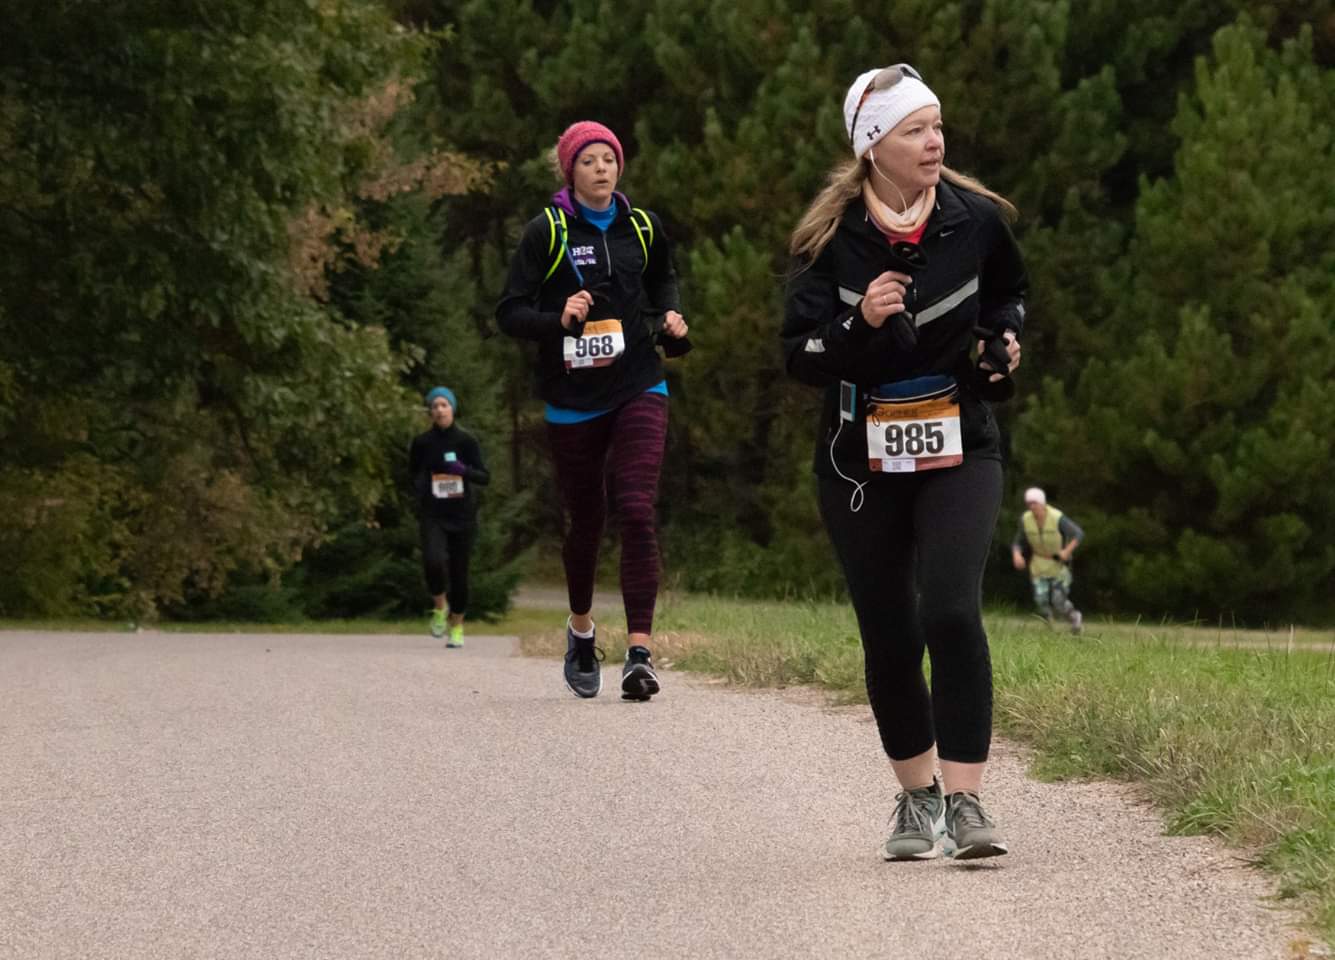 2018 Empowered Women's Half-Marathon and 5k